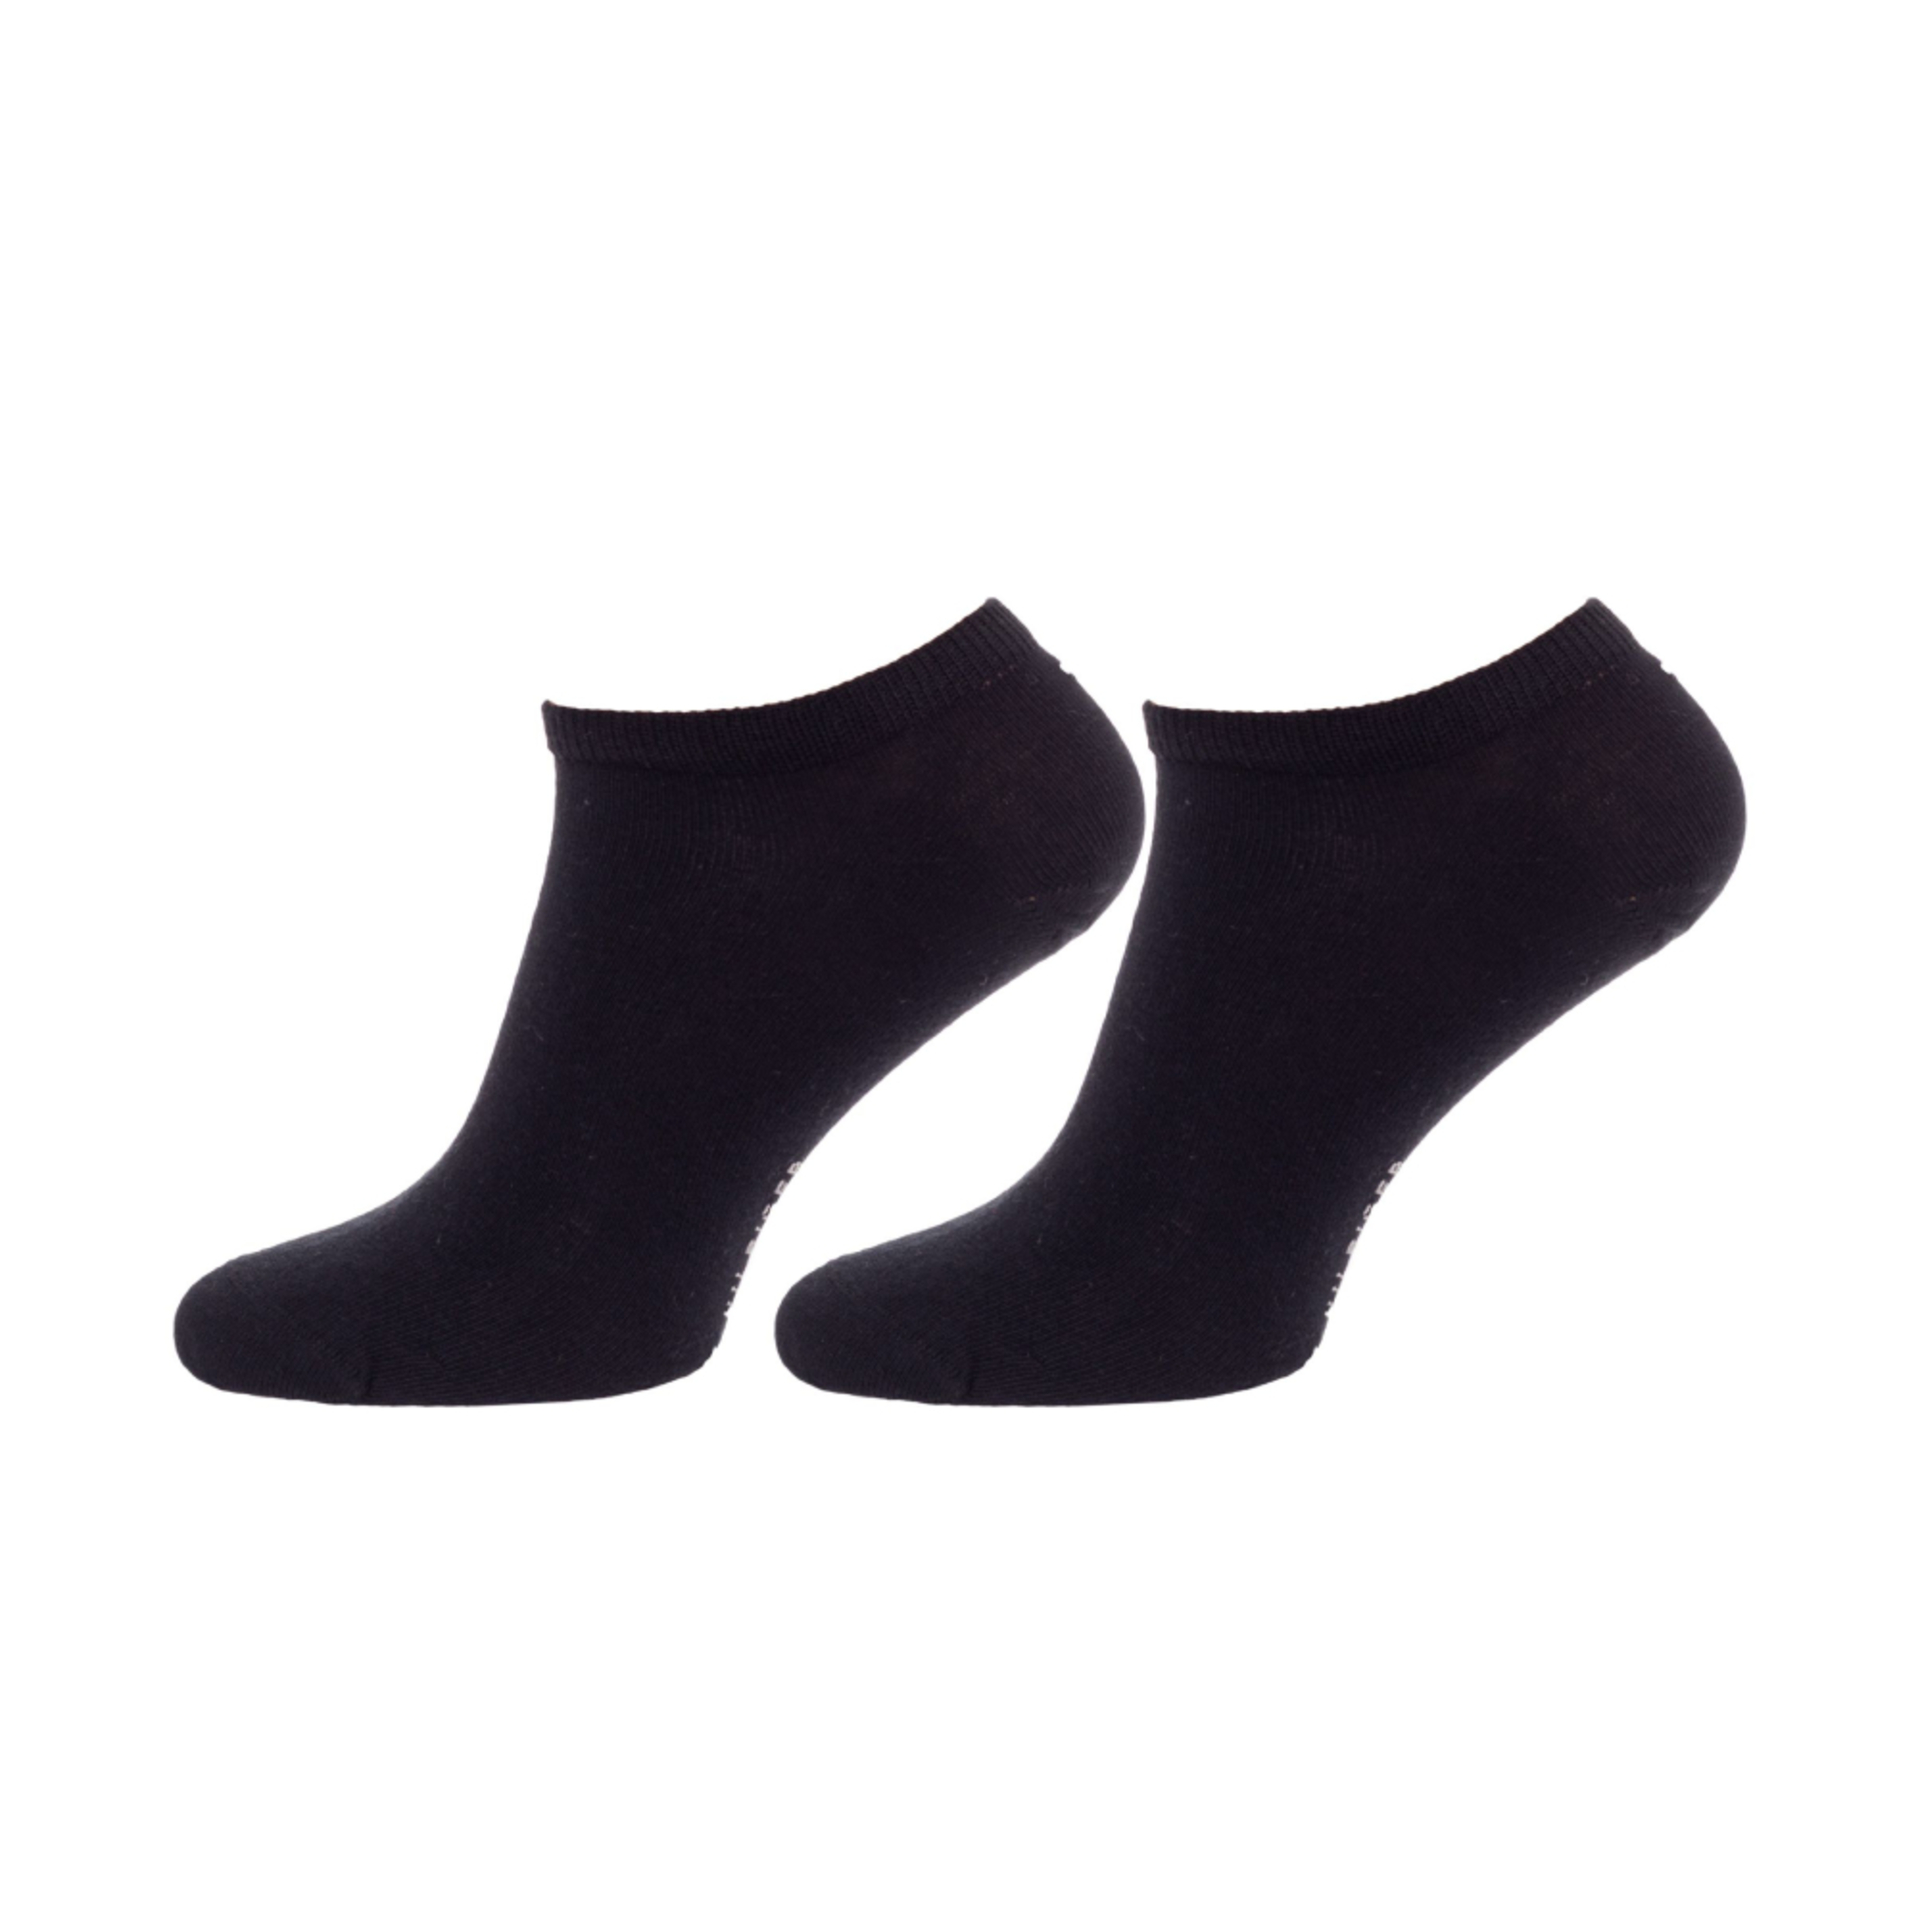 Tommy Hilfiger pánske čierne ponožky 2 pack - 39/42 (200)